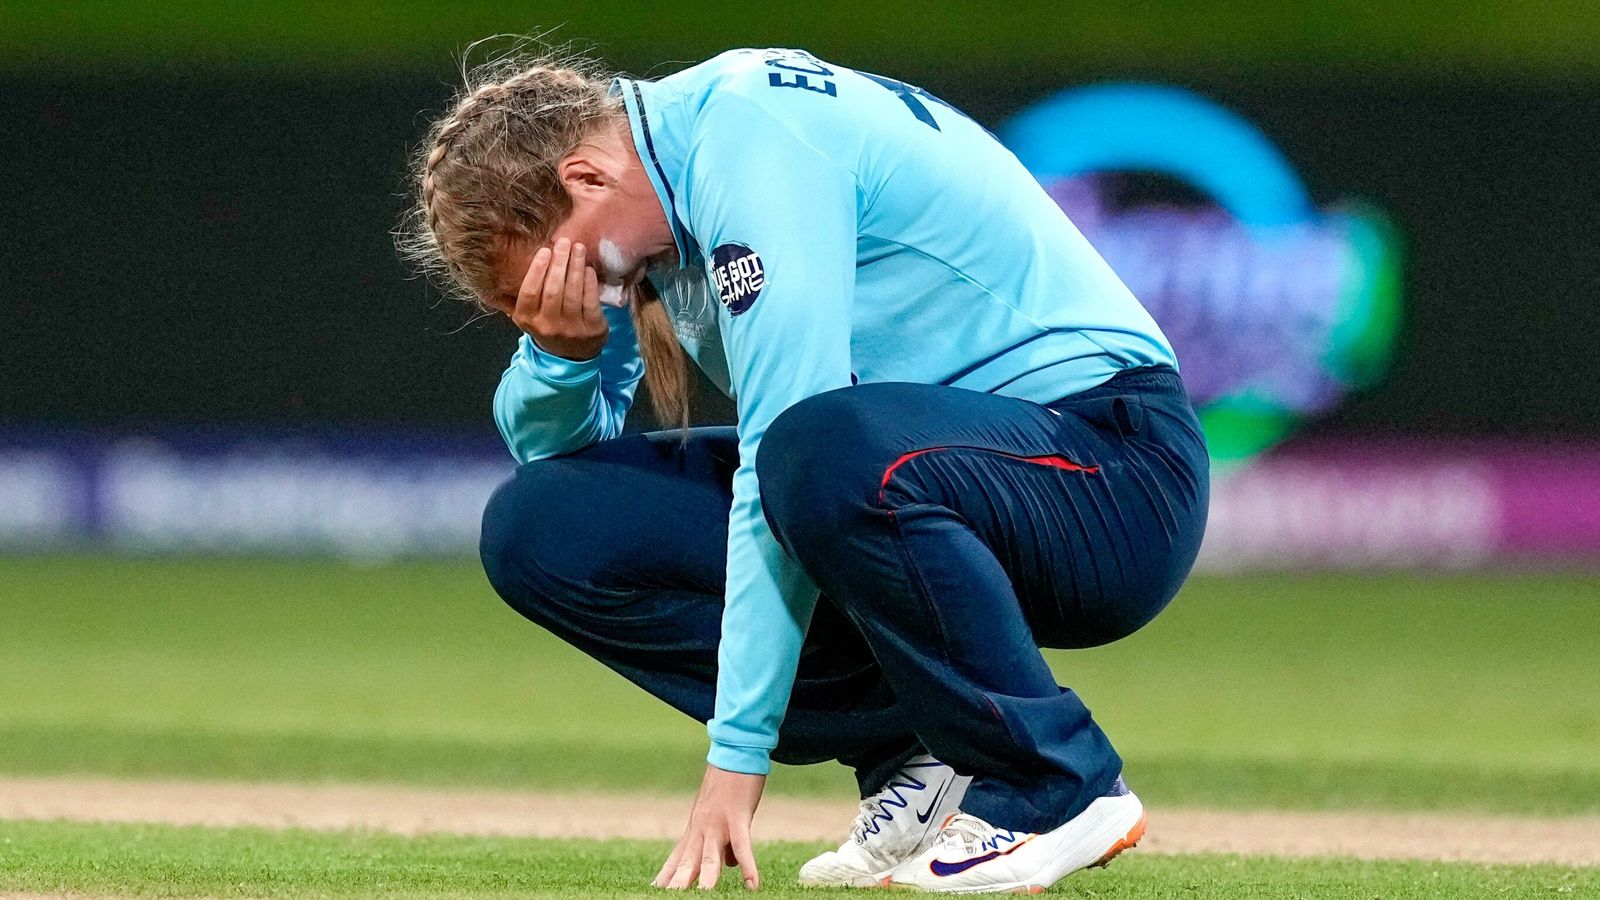 Coupe du monde de cricket féminin : l’Angleterre subit une troisième défaite consécutive alors que Marizanne Kapp joue pour l’Afrique du Sud |  Nouvelles du cricket